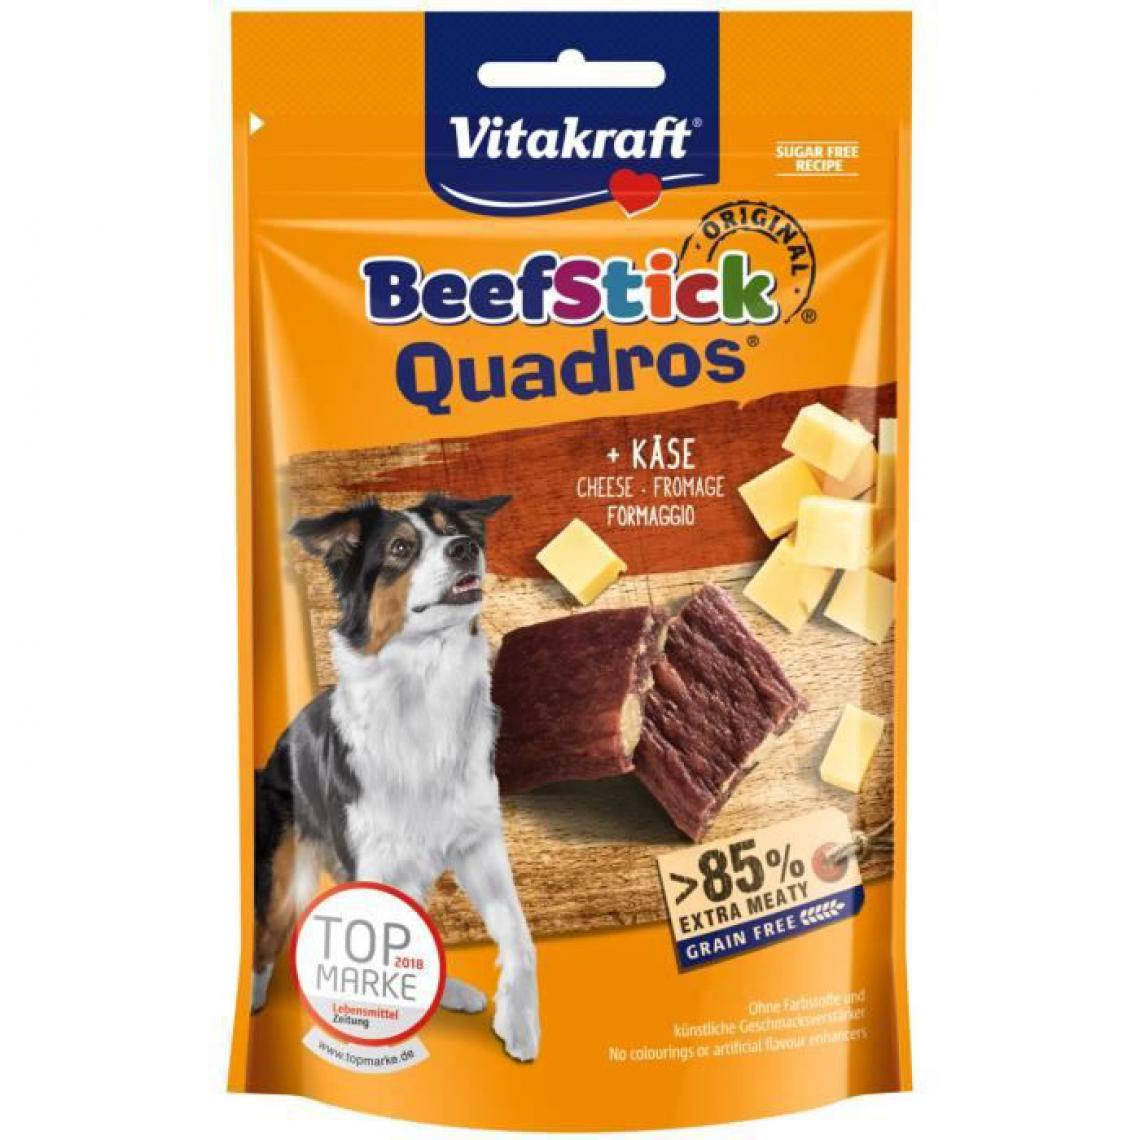 Vitakraft - VITAKRAFT Beef Stick Quadros Friandise pour chien Viande et Fromage - Lot de 7 sachets de 70g - Croquettes pour chien